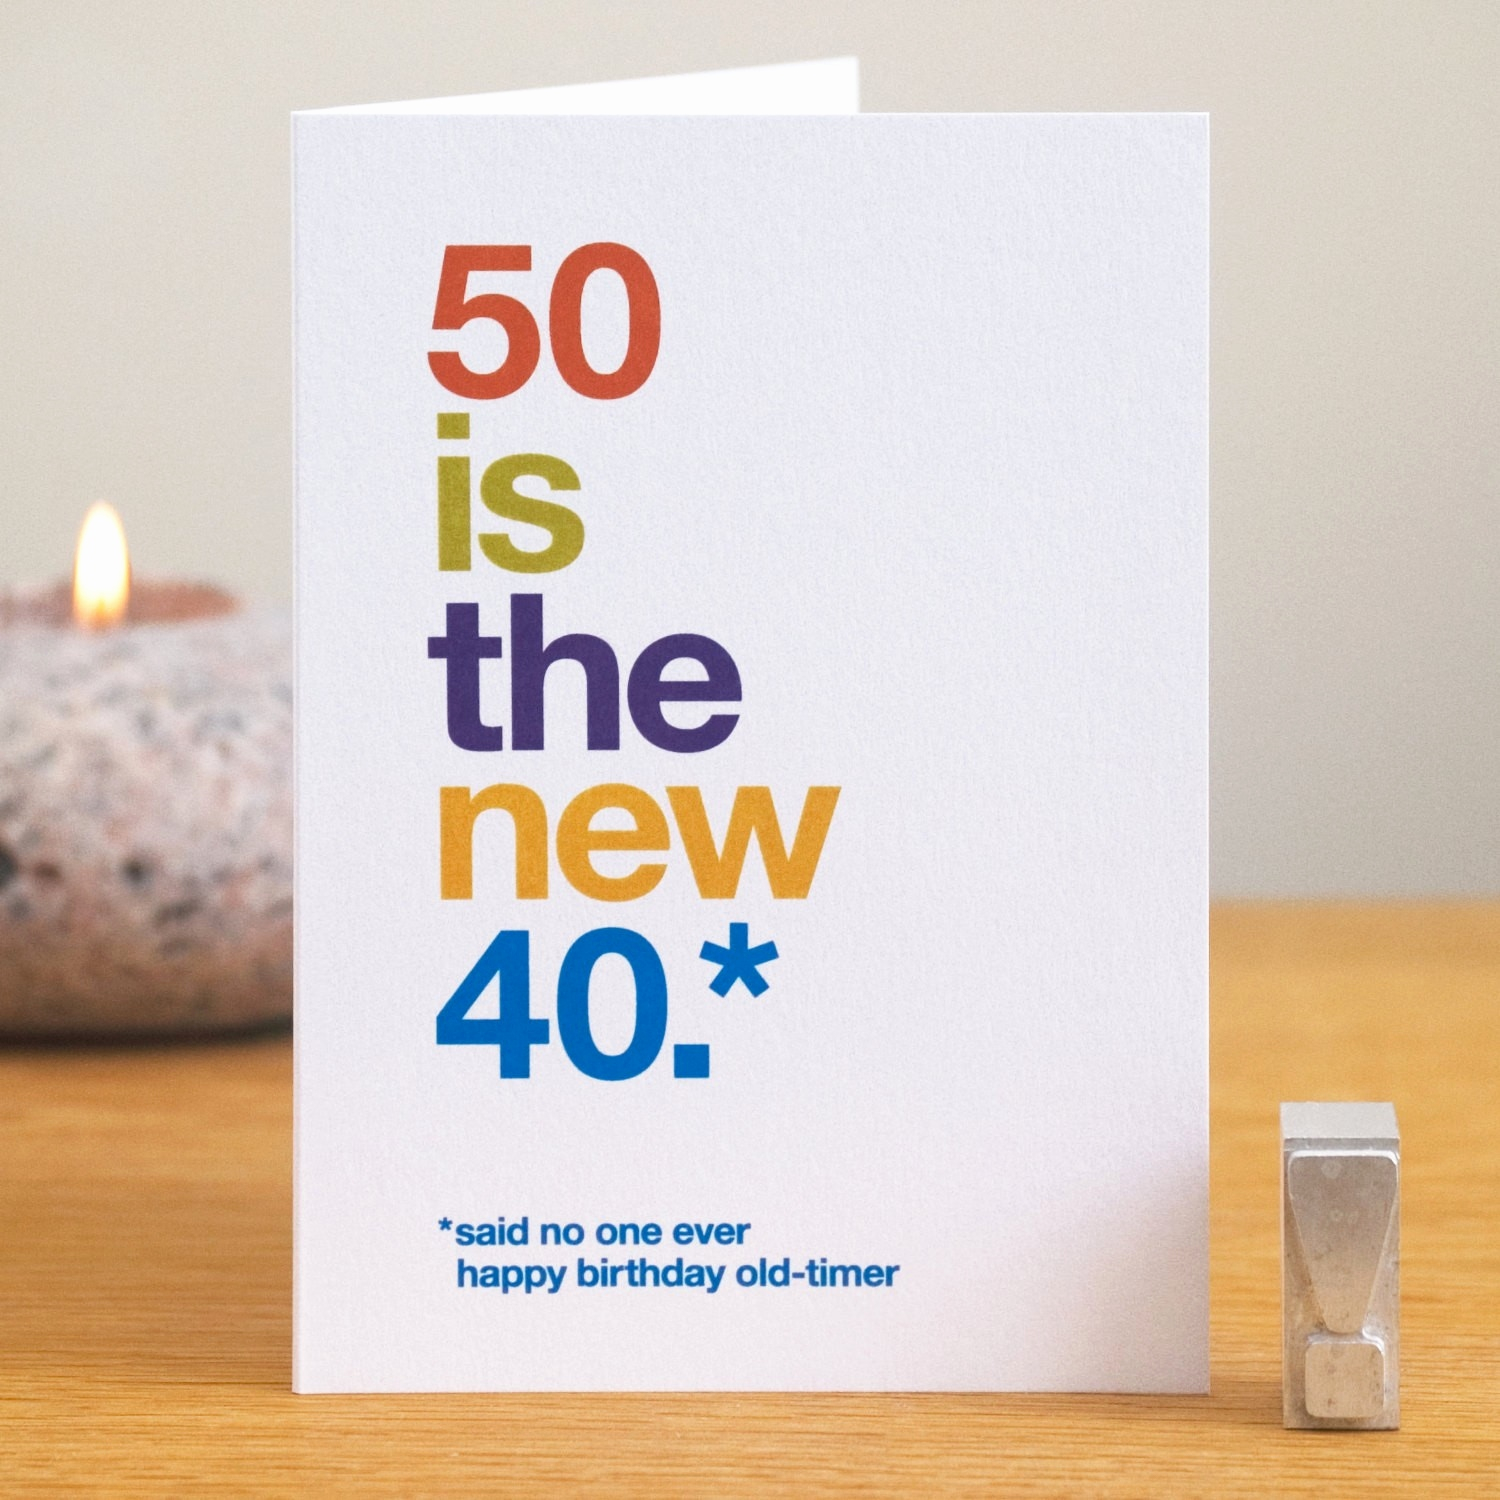 Happy Birthday Dad Card Ideas 87 Funny 50th Birthday Card Ideas Funny 50th Birthday Cards For